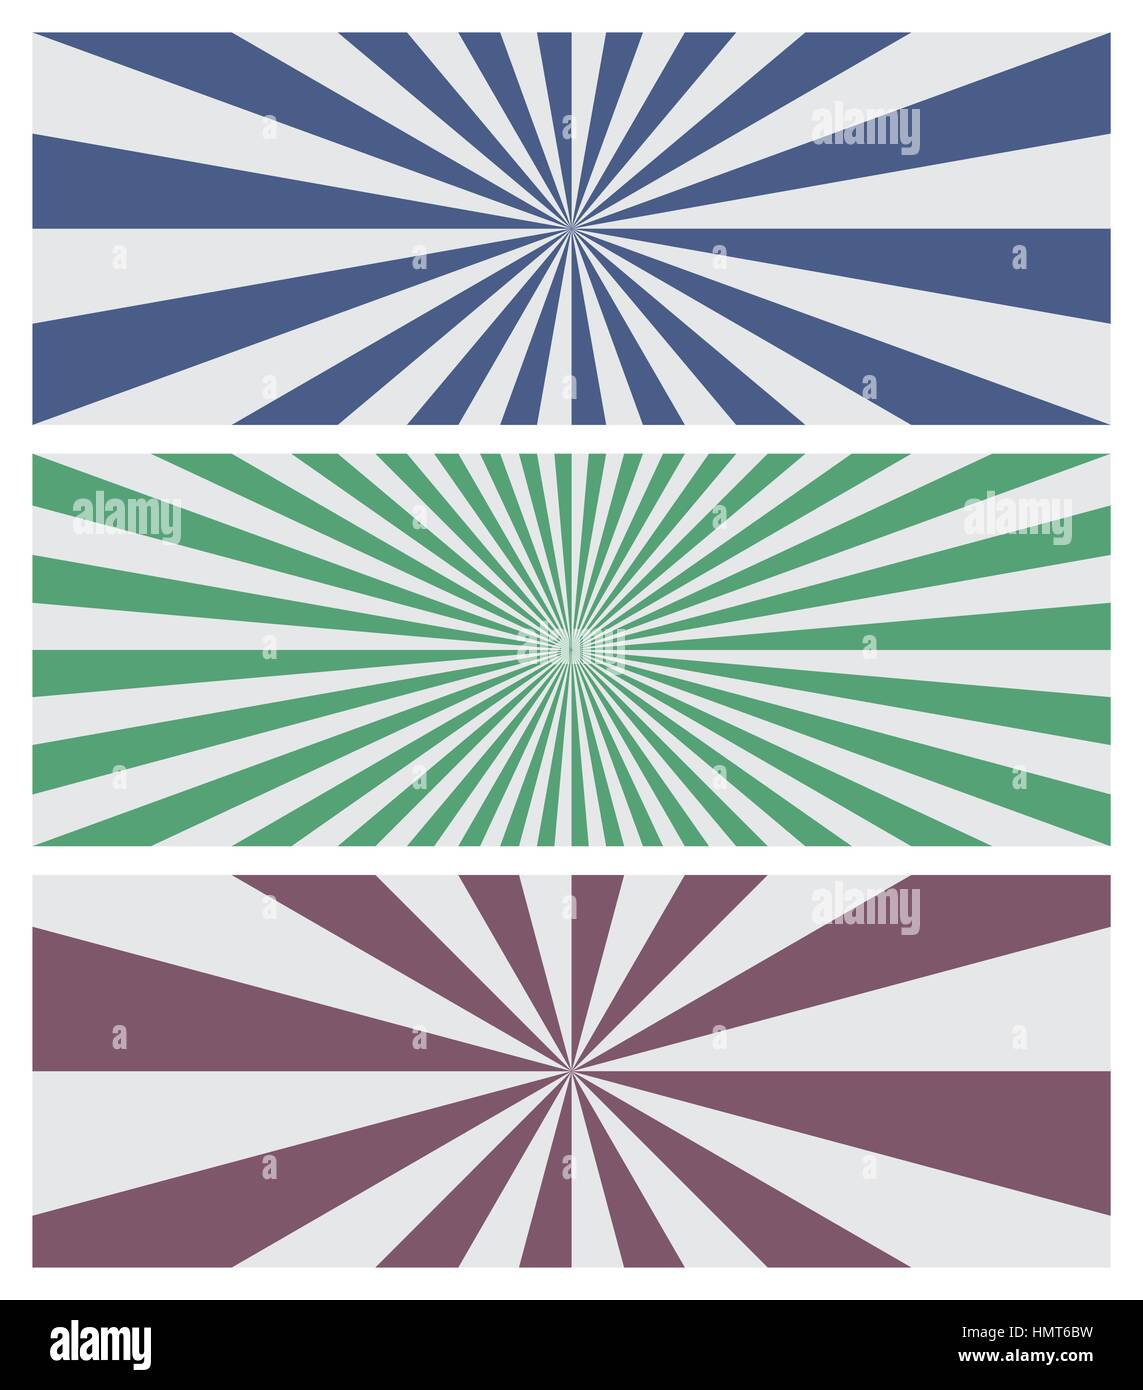 Set di tre sfondi soleggiato nei colori blu, verde e viola. Le strisce come raggi si irradiano dal centro ai bordi del banner rettangolare. Illustrazione Vettoriale